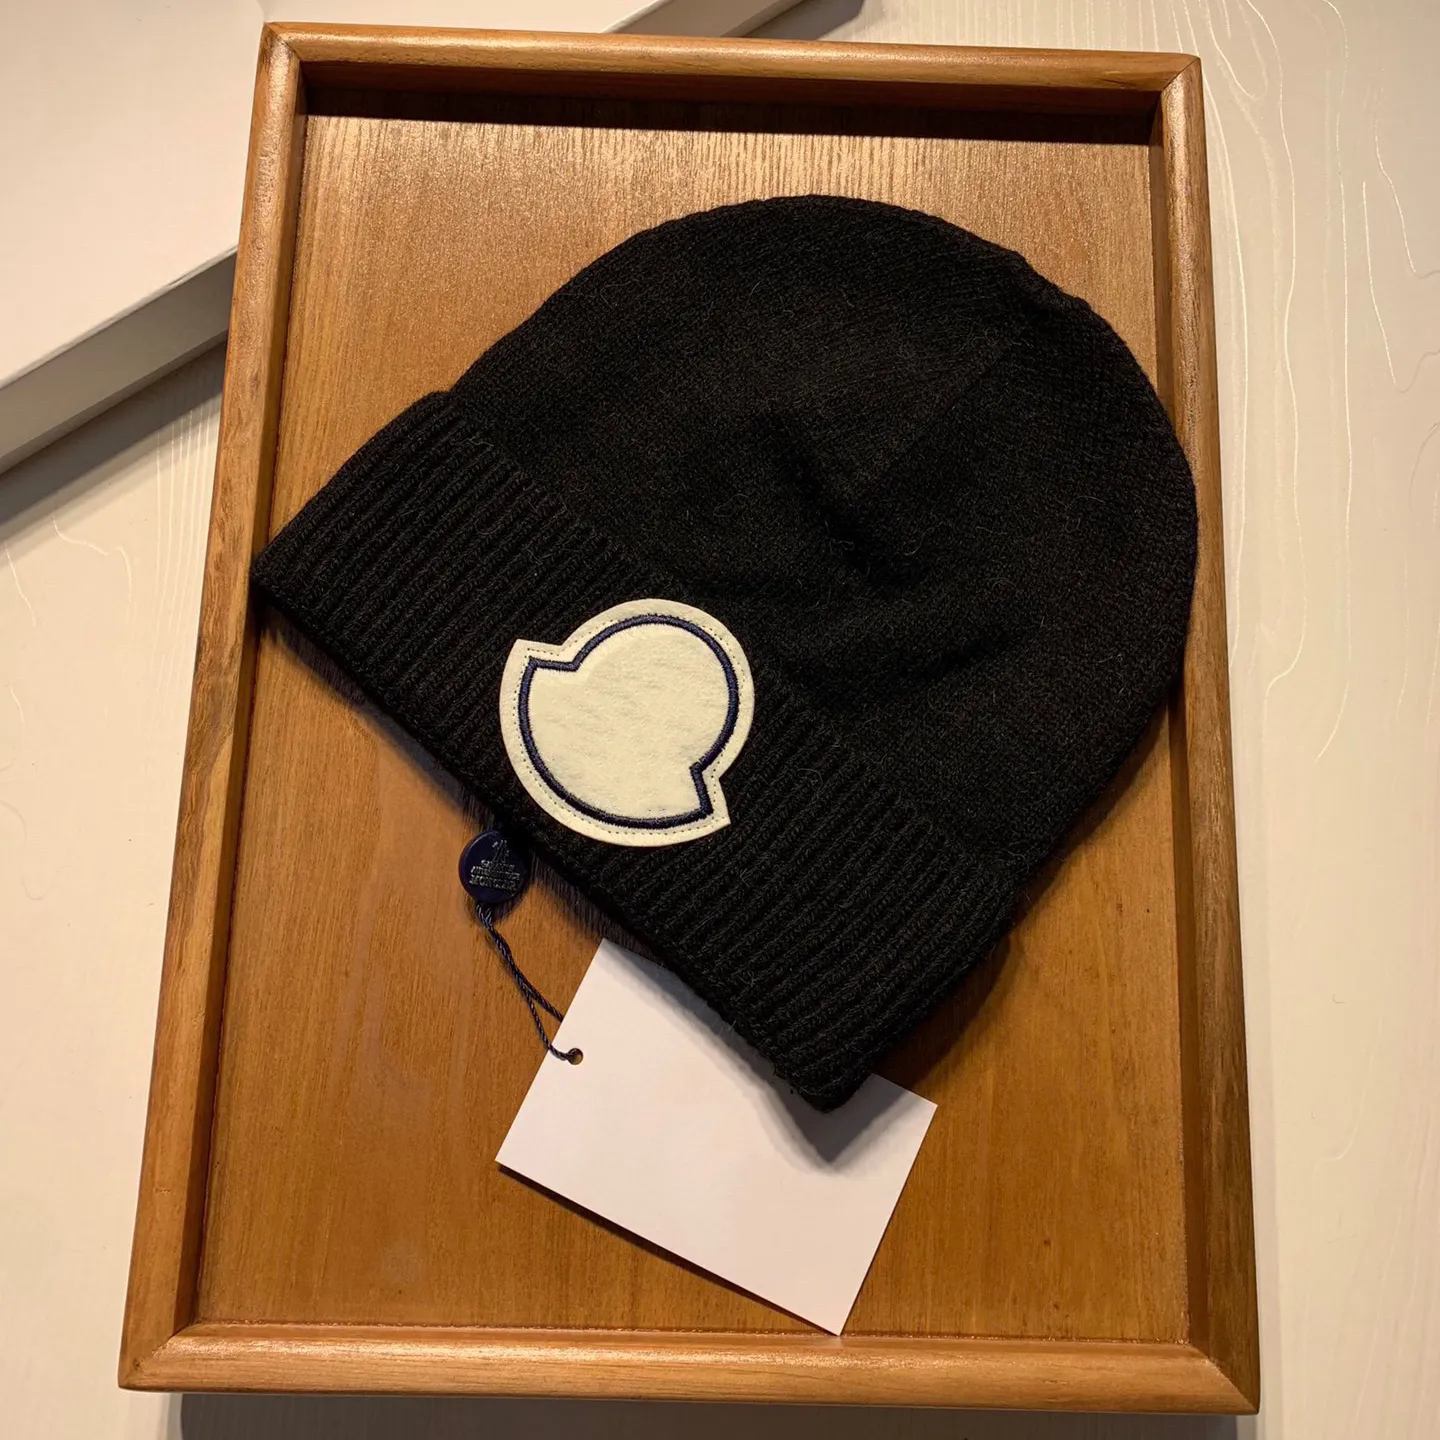 Luxuriöse Mütze, Designer-Mütze, Winter-Strickmütze für Männer und Frauen, warme Mütze, großes Logo, vielseitig, Temperatur, Kälte, Skimütze, Gezeiten, mehrfarbig, Paar-Pullover-Mütze